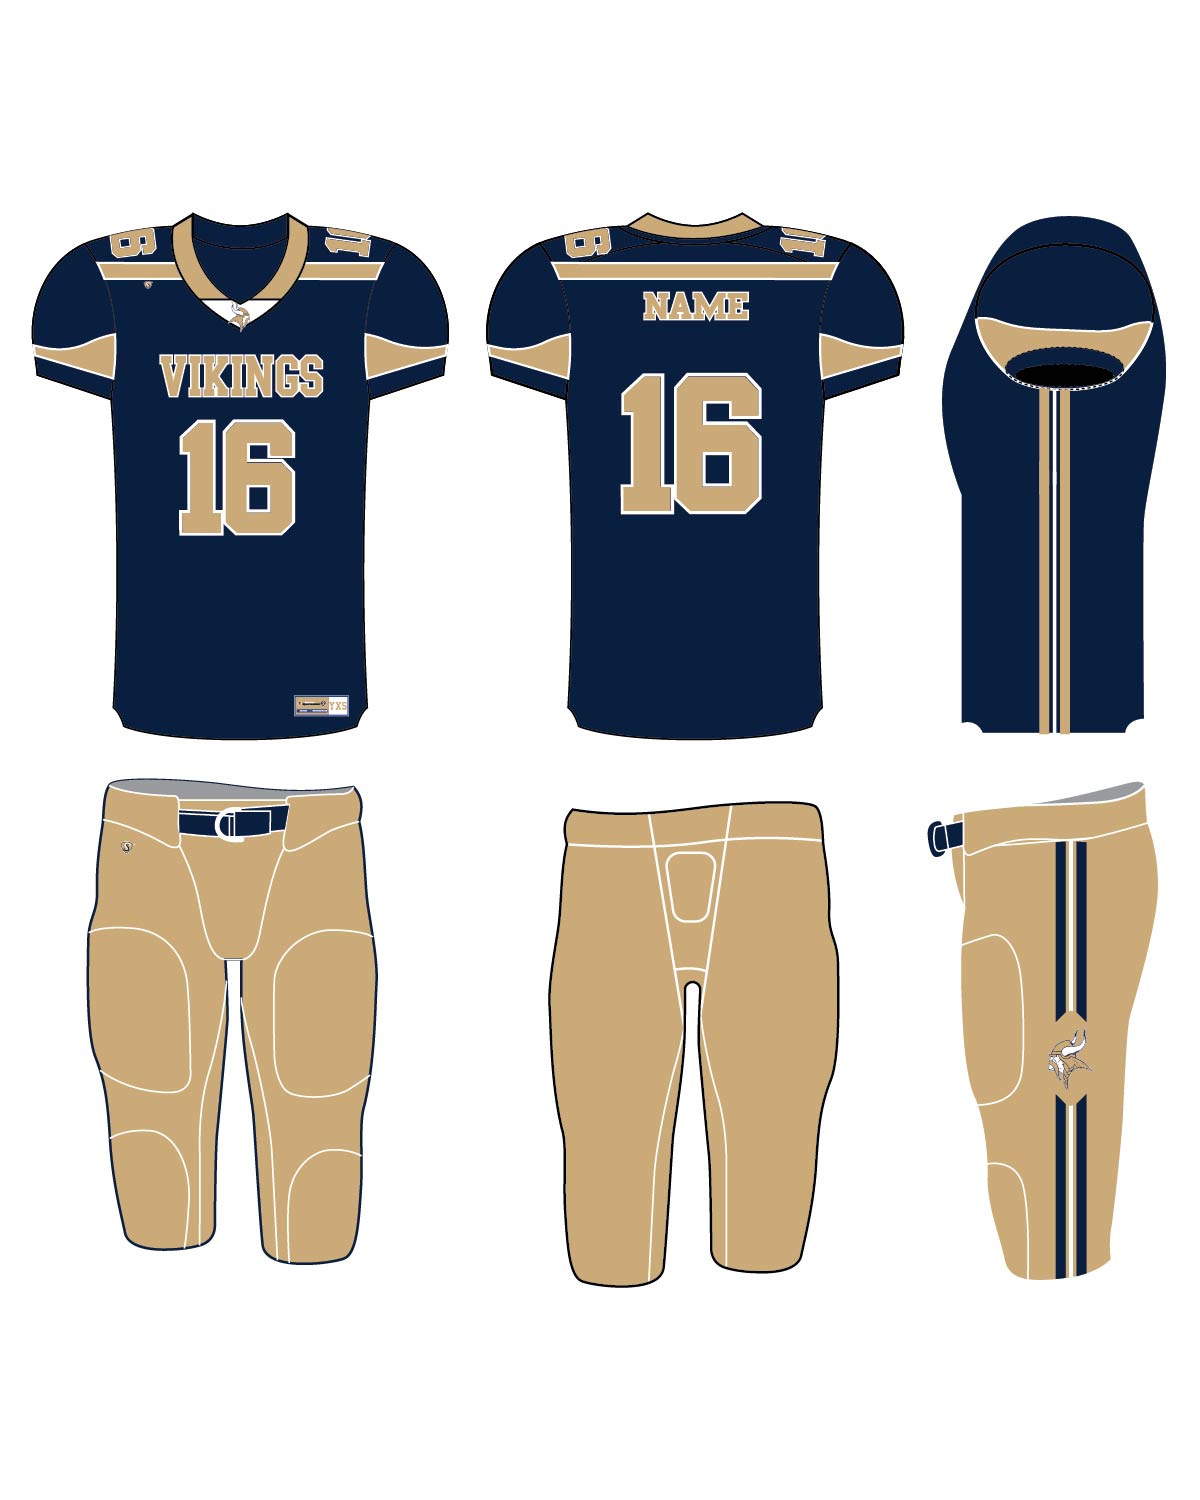 Custom Sublimated Football Uniform - Vikings 3